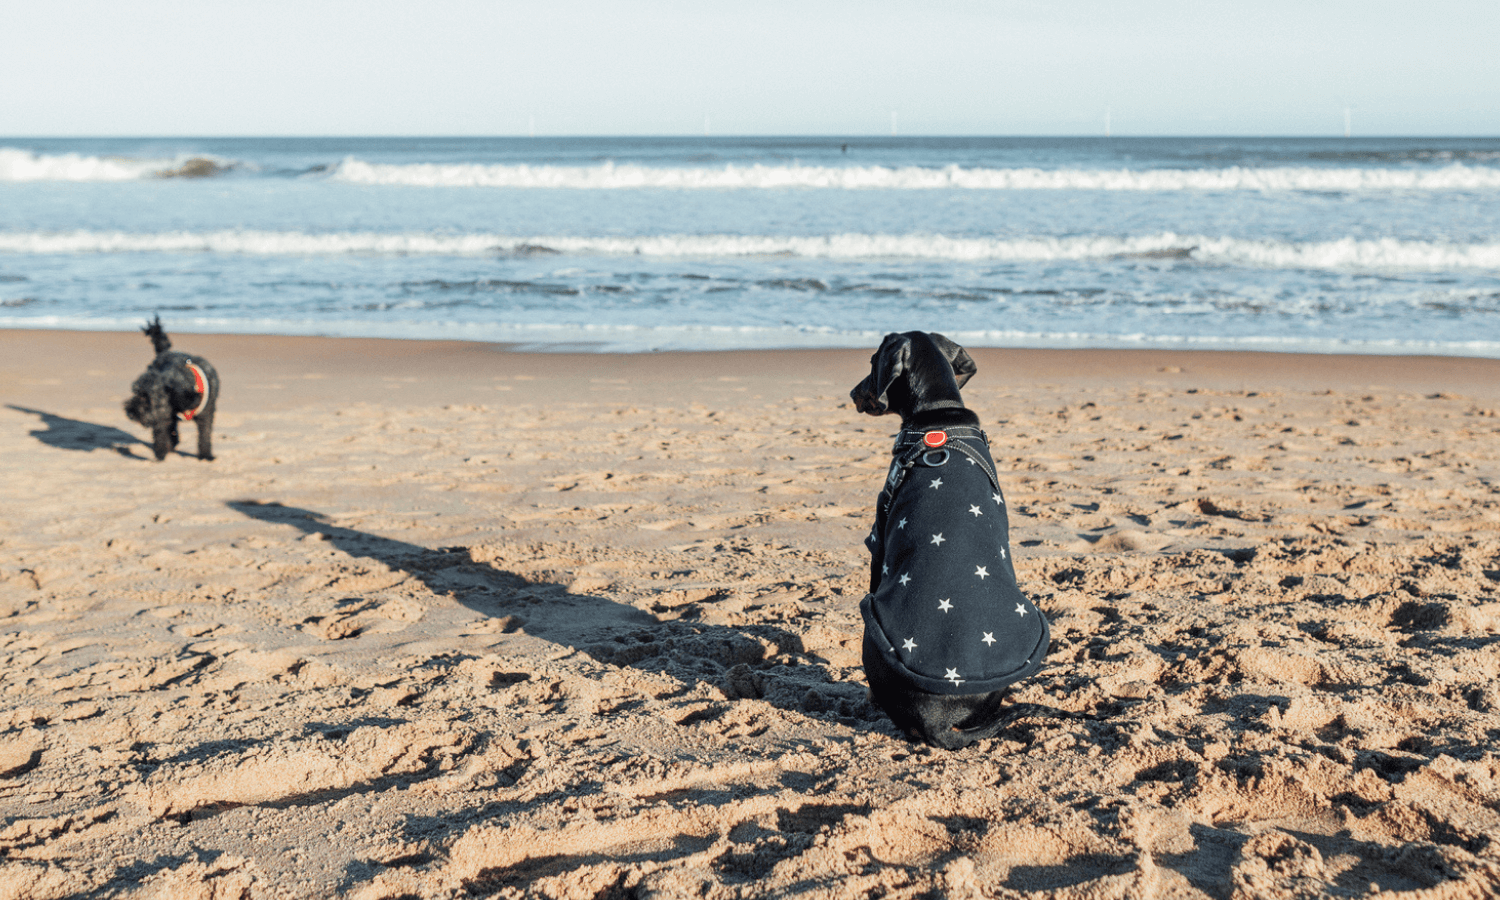 Hundezubehör wie ein Hundemantel kann im Winter sinnvoll sein, wenn der Hund zum Beispiel sehr kurzes Fell hat oder wenn es am Strand sehr windig ist. © iStock.com